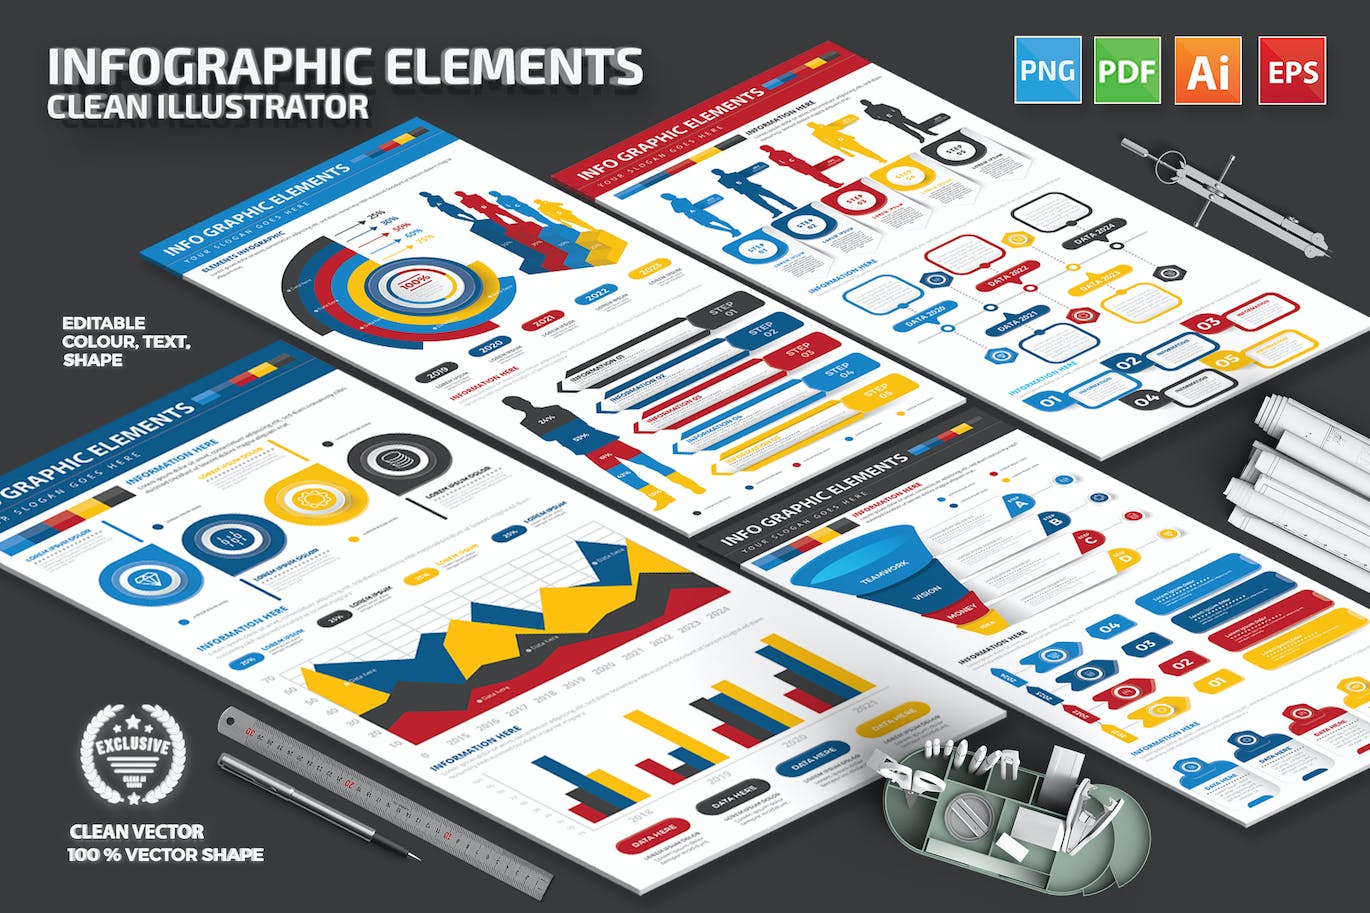 多用途通用信息图表元素模板 Infographic Elements 幻灯图表 第1张